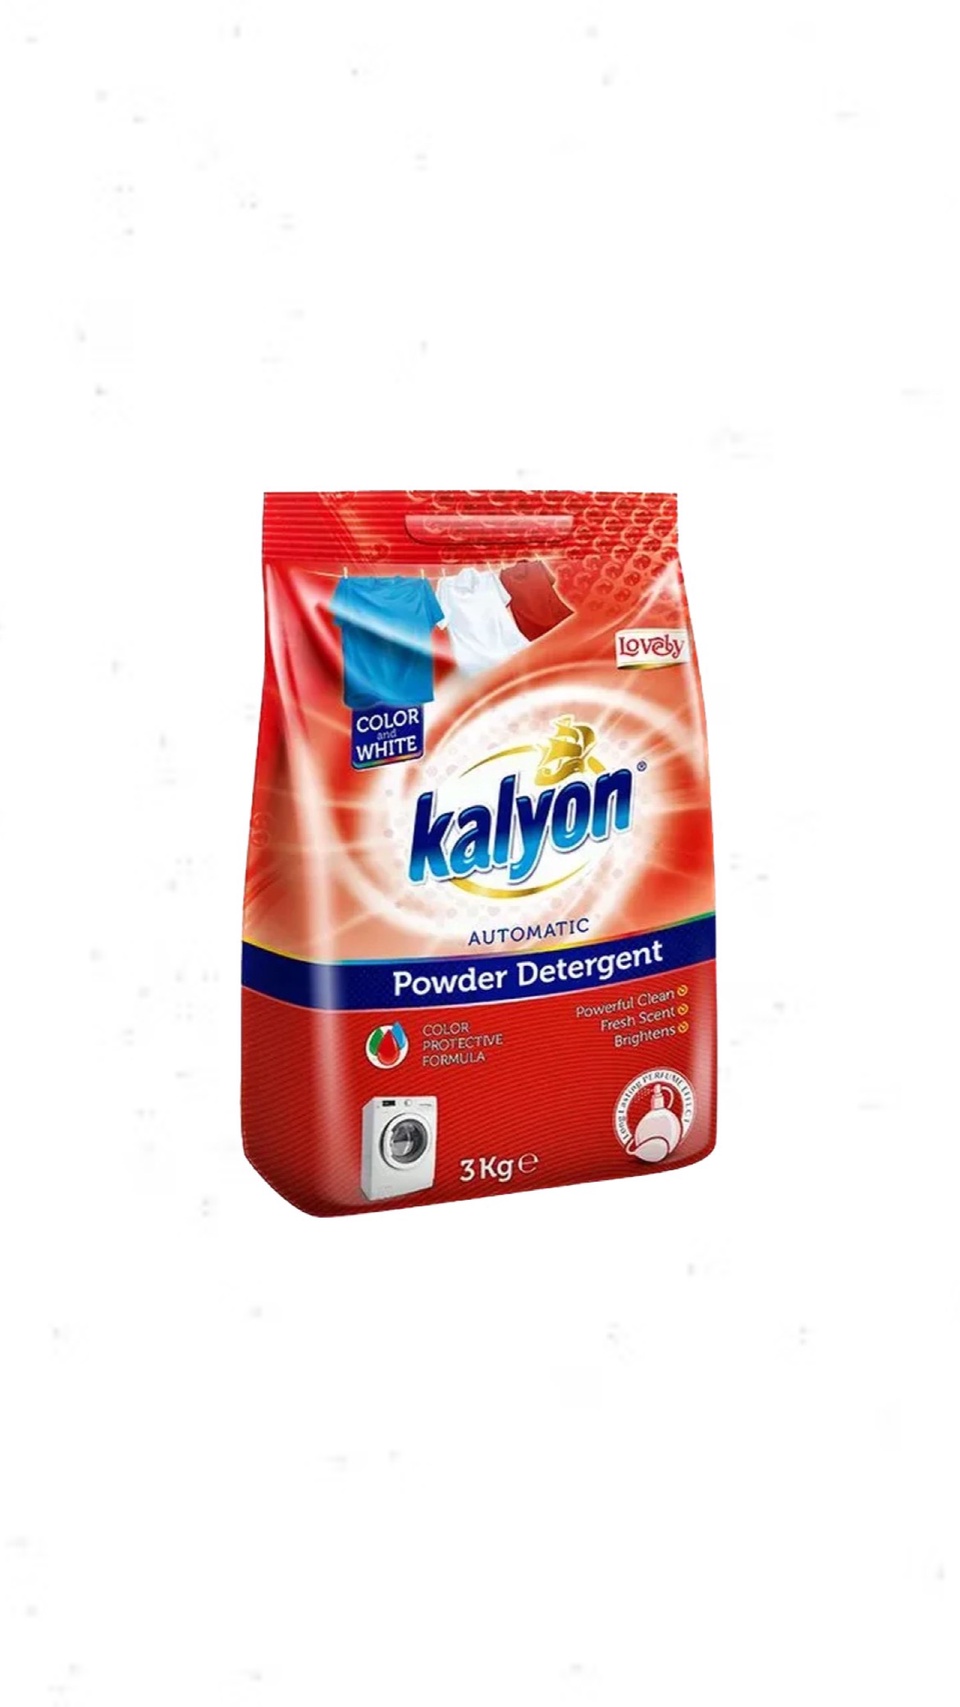 Стиральный порошок Kalyon Lovely автомат универсальный 3 кг - 500 ₽, заказать онлайн.